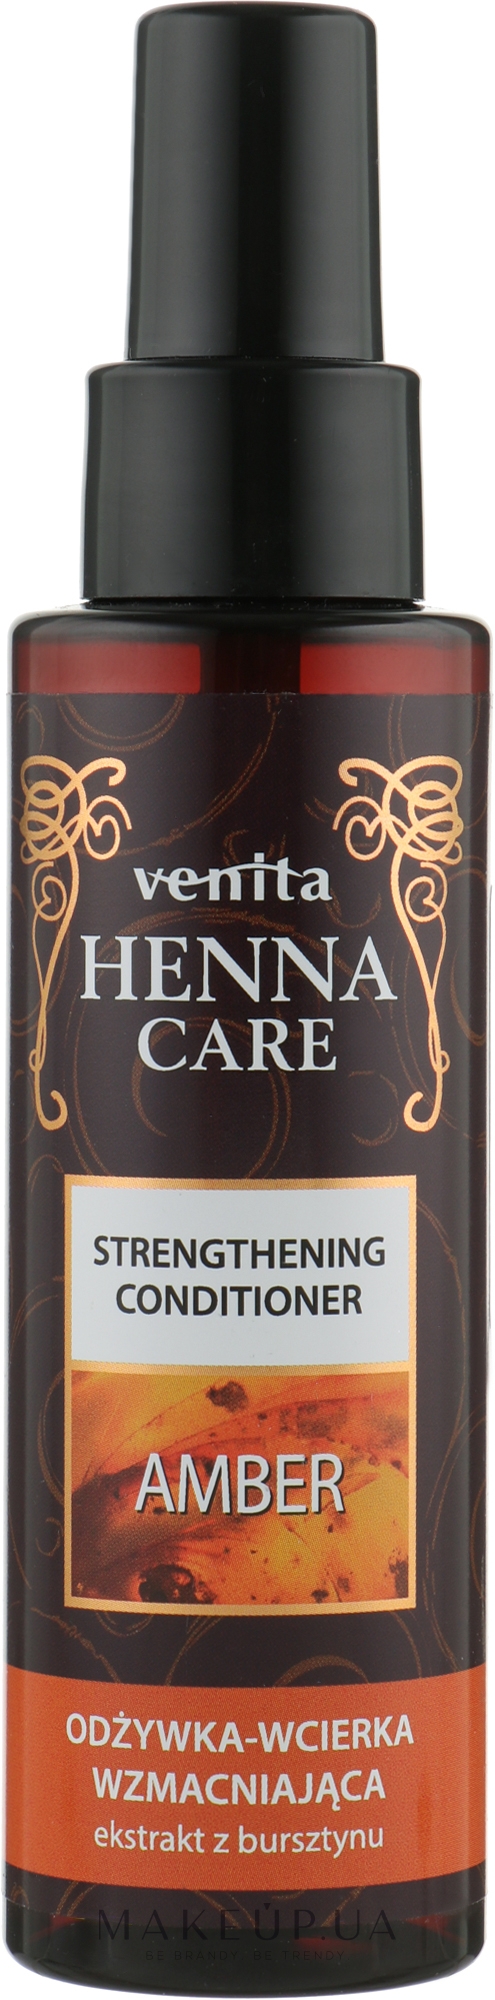 Кондиционер-втирка для волос с экстрактом янтаря, укрепляющий и увлажняющий - Venita Henna Care Amber Strengthening Conditioner — фото 100ml